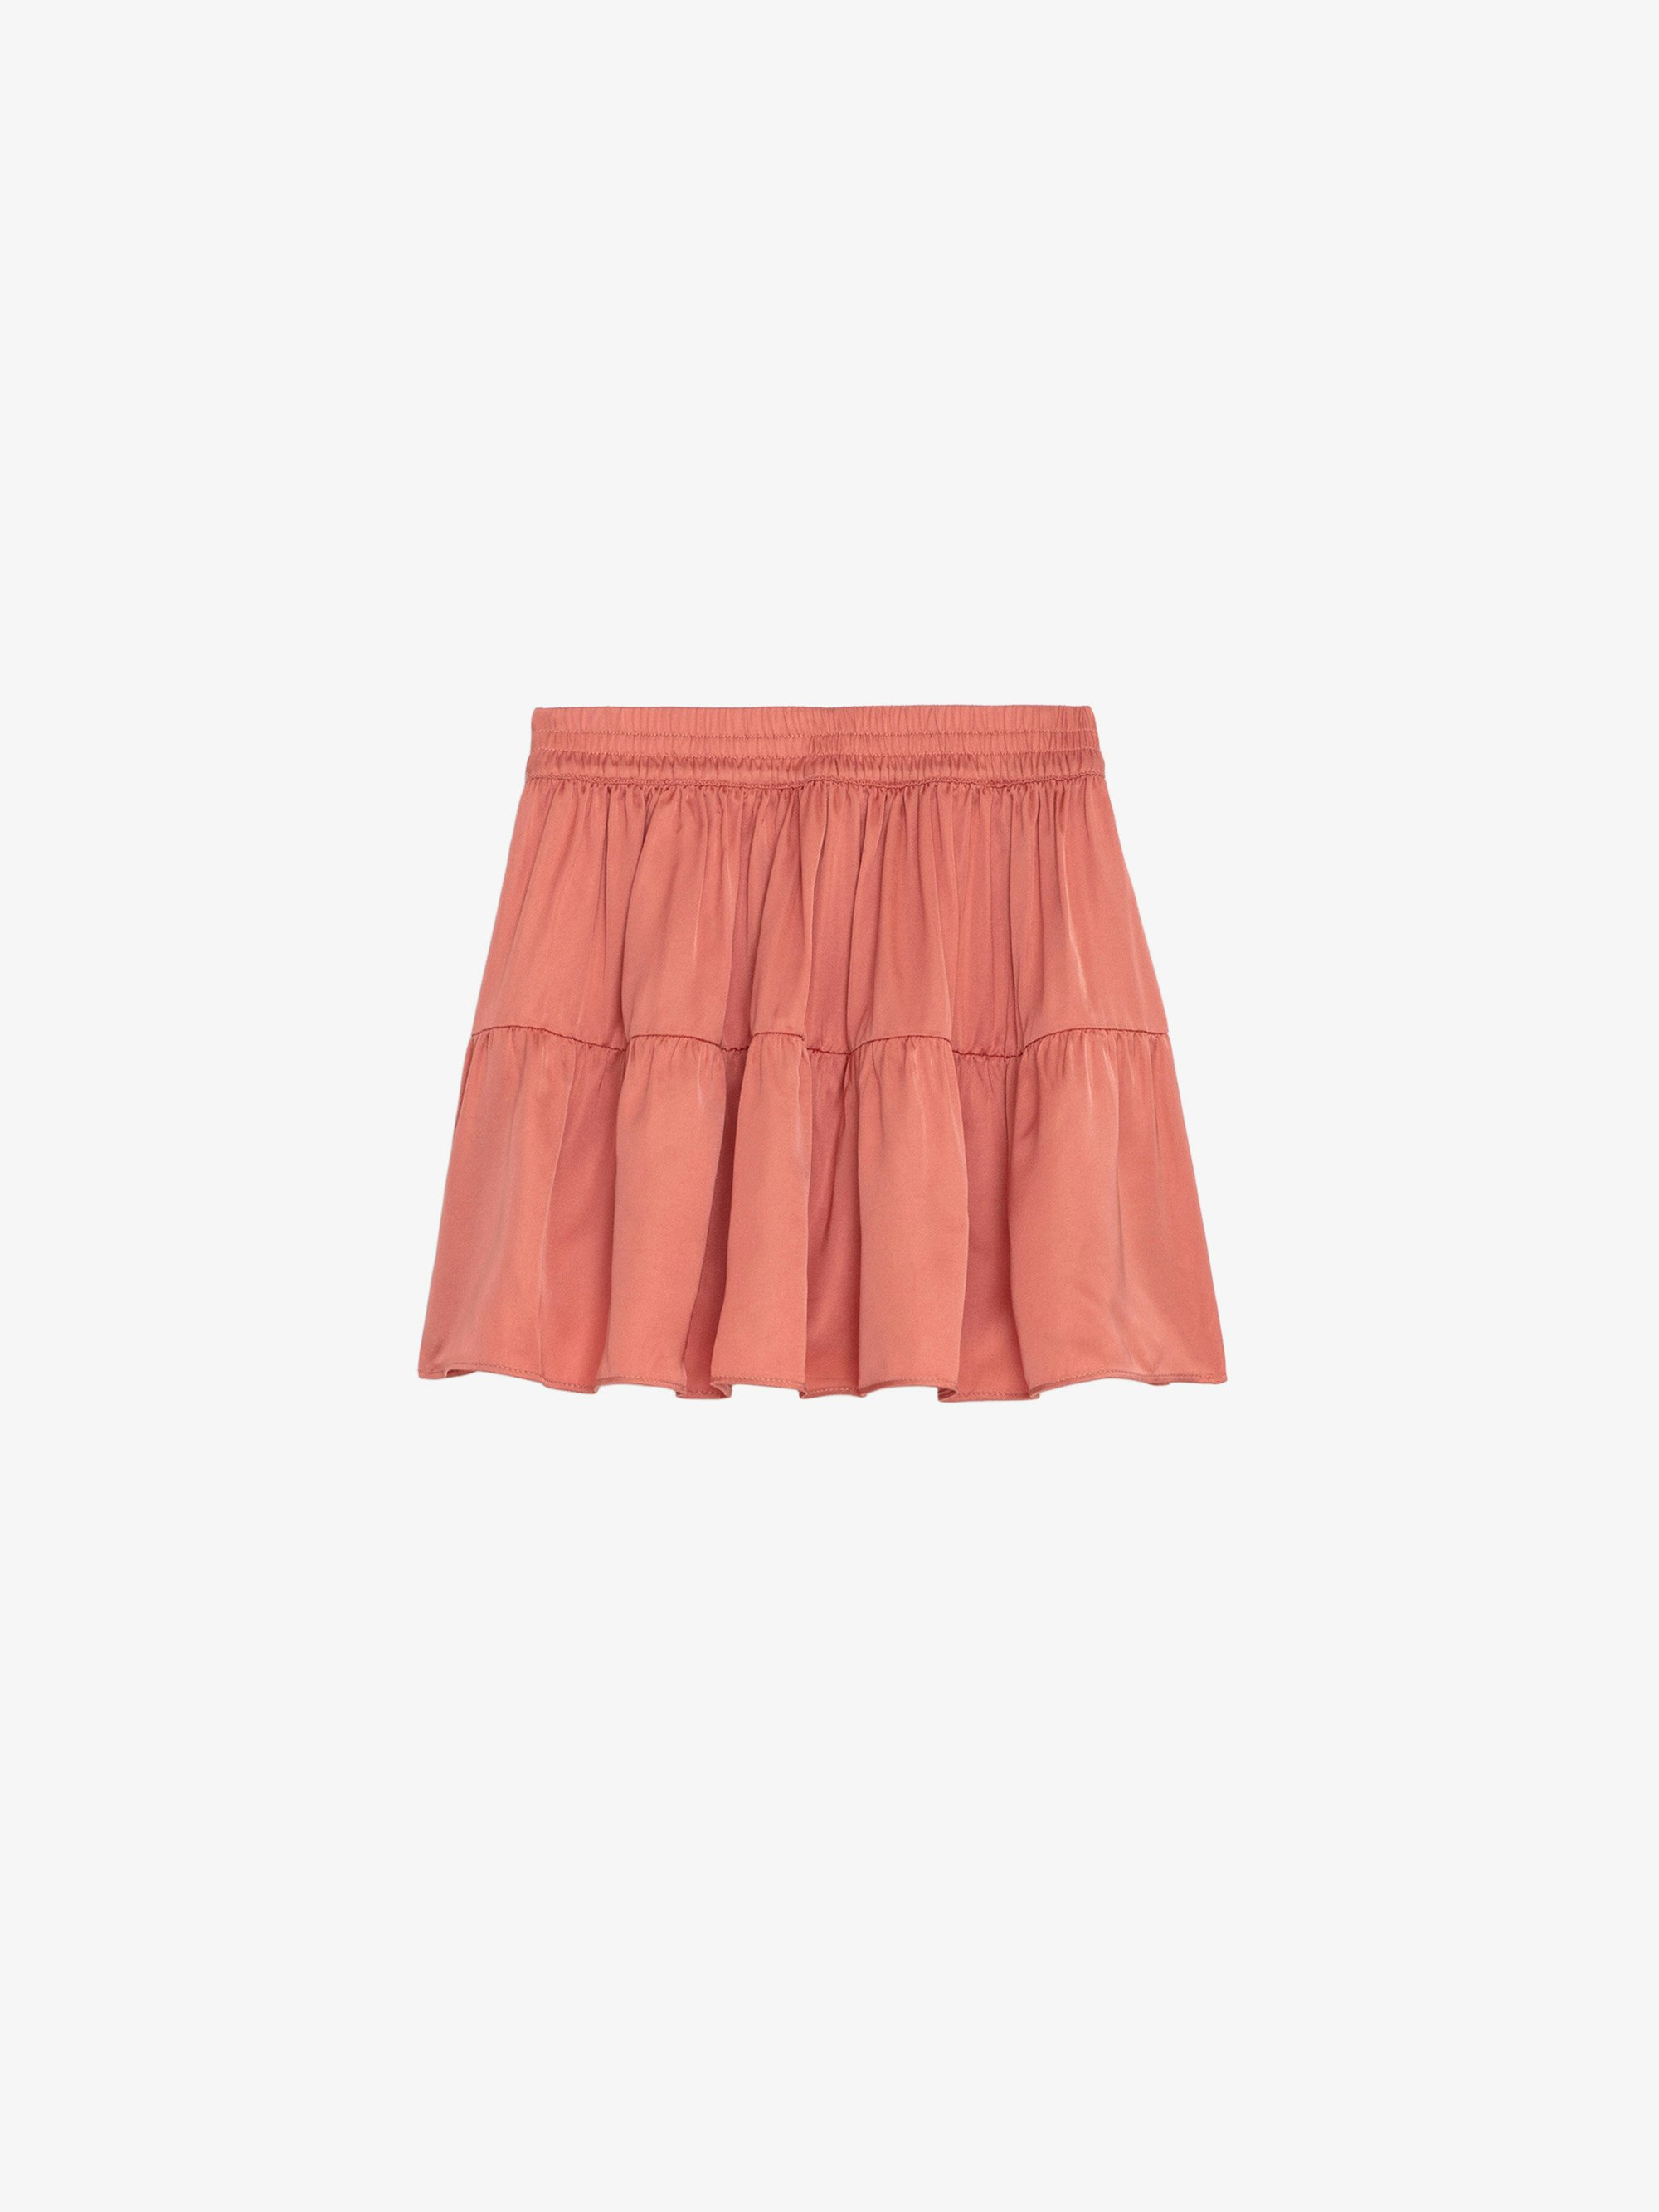 Rink Girls’ Skirt - Girls’ satiny pink asymmetric skirt.